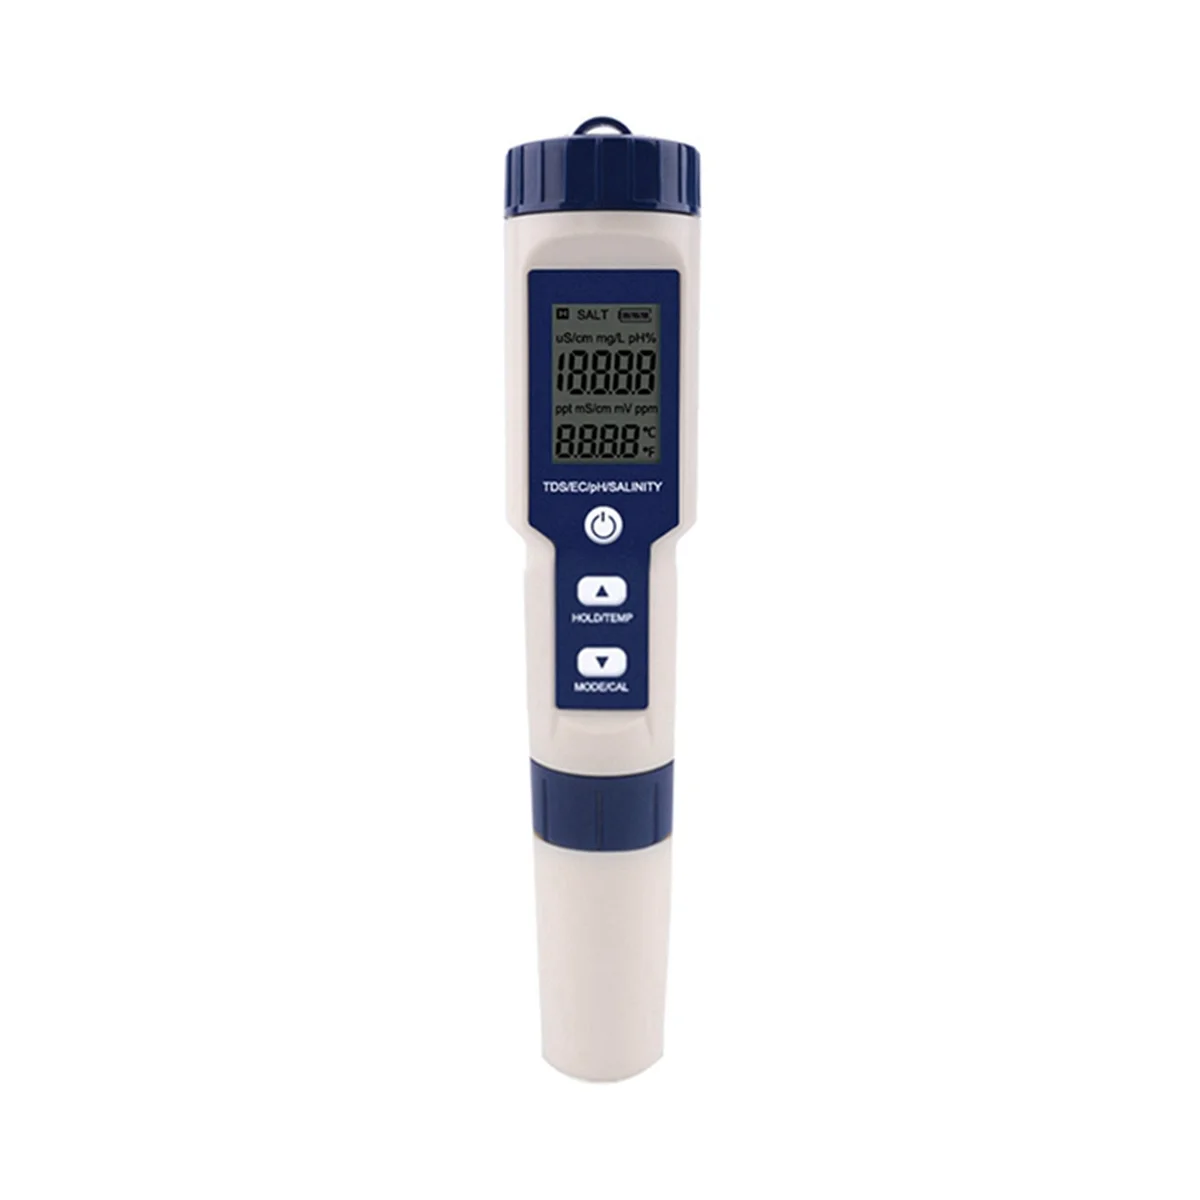 5 в 1 TDS/EC/PH/Измеритель солености/температуры Цифровой тестер монитора качества воды для бассейнов, питьевой воды, аквариумов